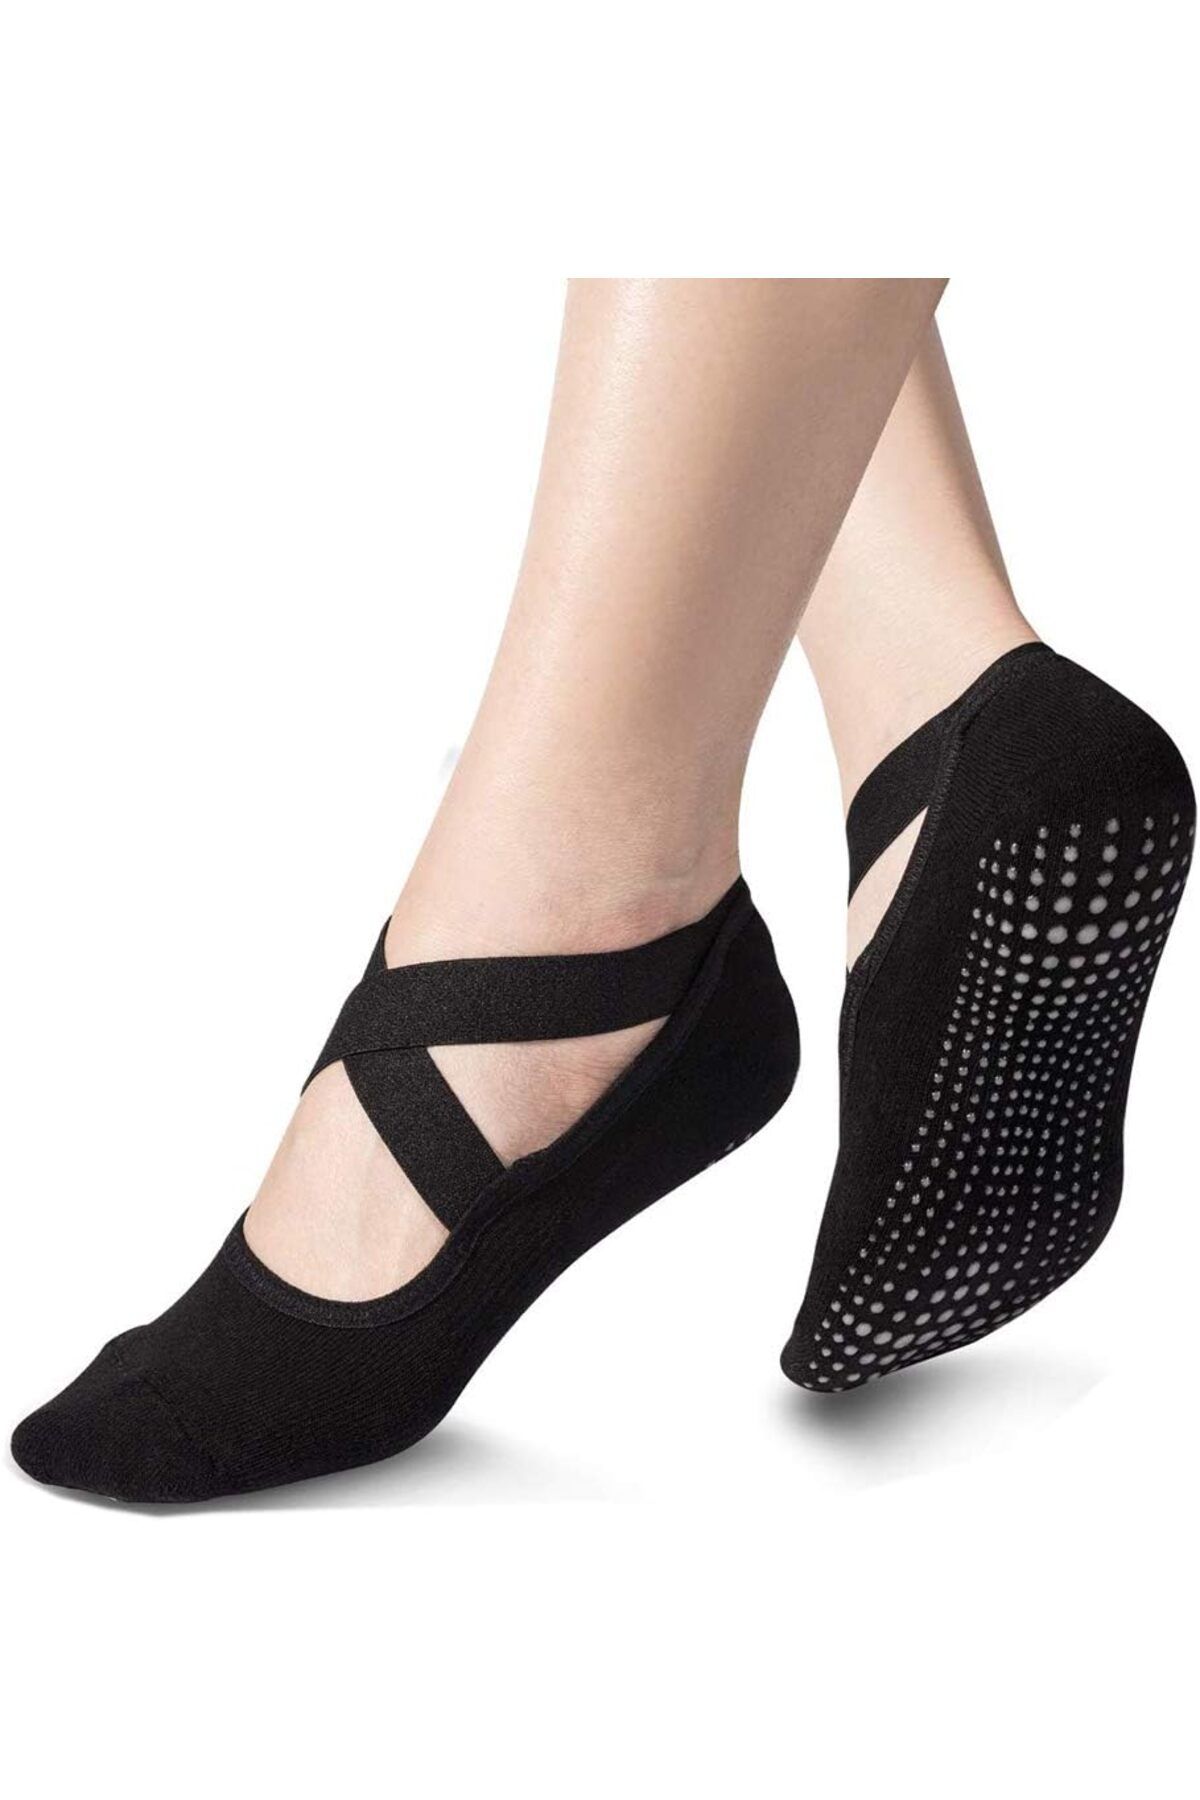 Aleza Shoes Silikonlu Kaydırmaz Yoga Pilates Çorabı Kadın Babet Çorap 3 Adet Siyah Çorap